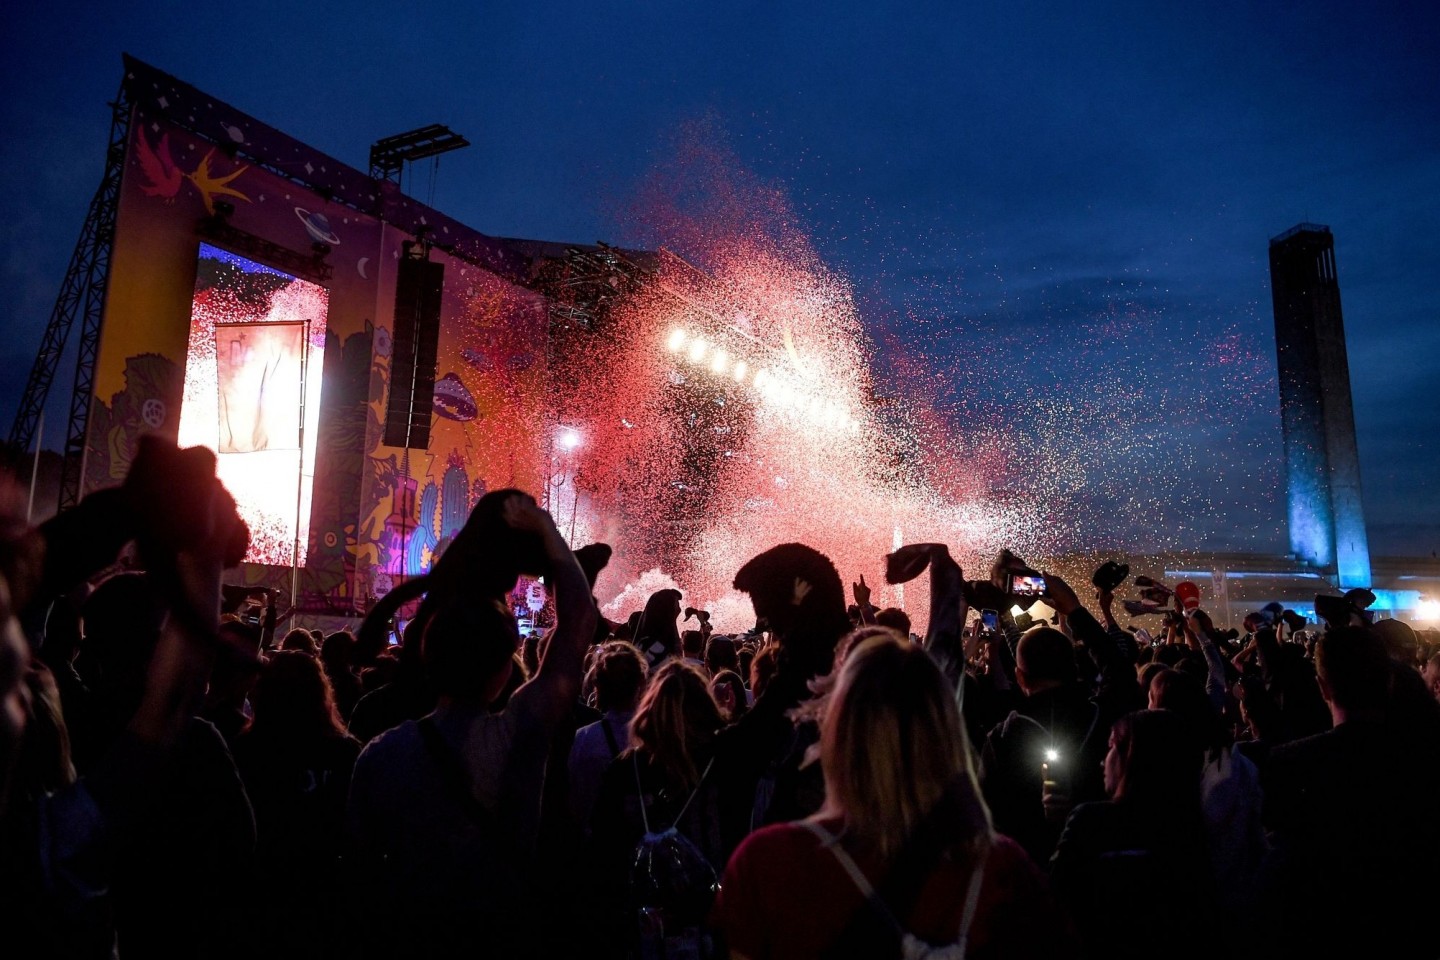 Das Lollapalooza Festival in Berlin fand zuletzt 2019 statt.